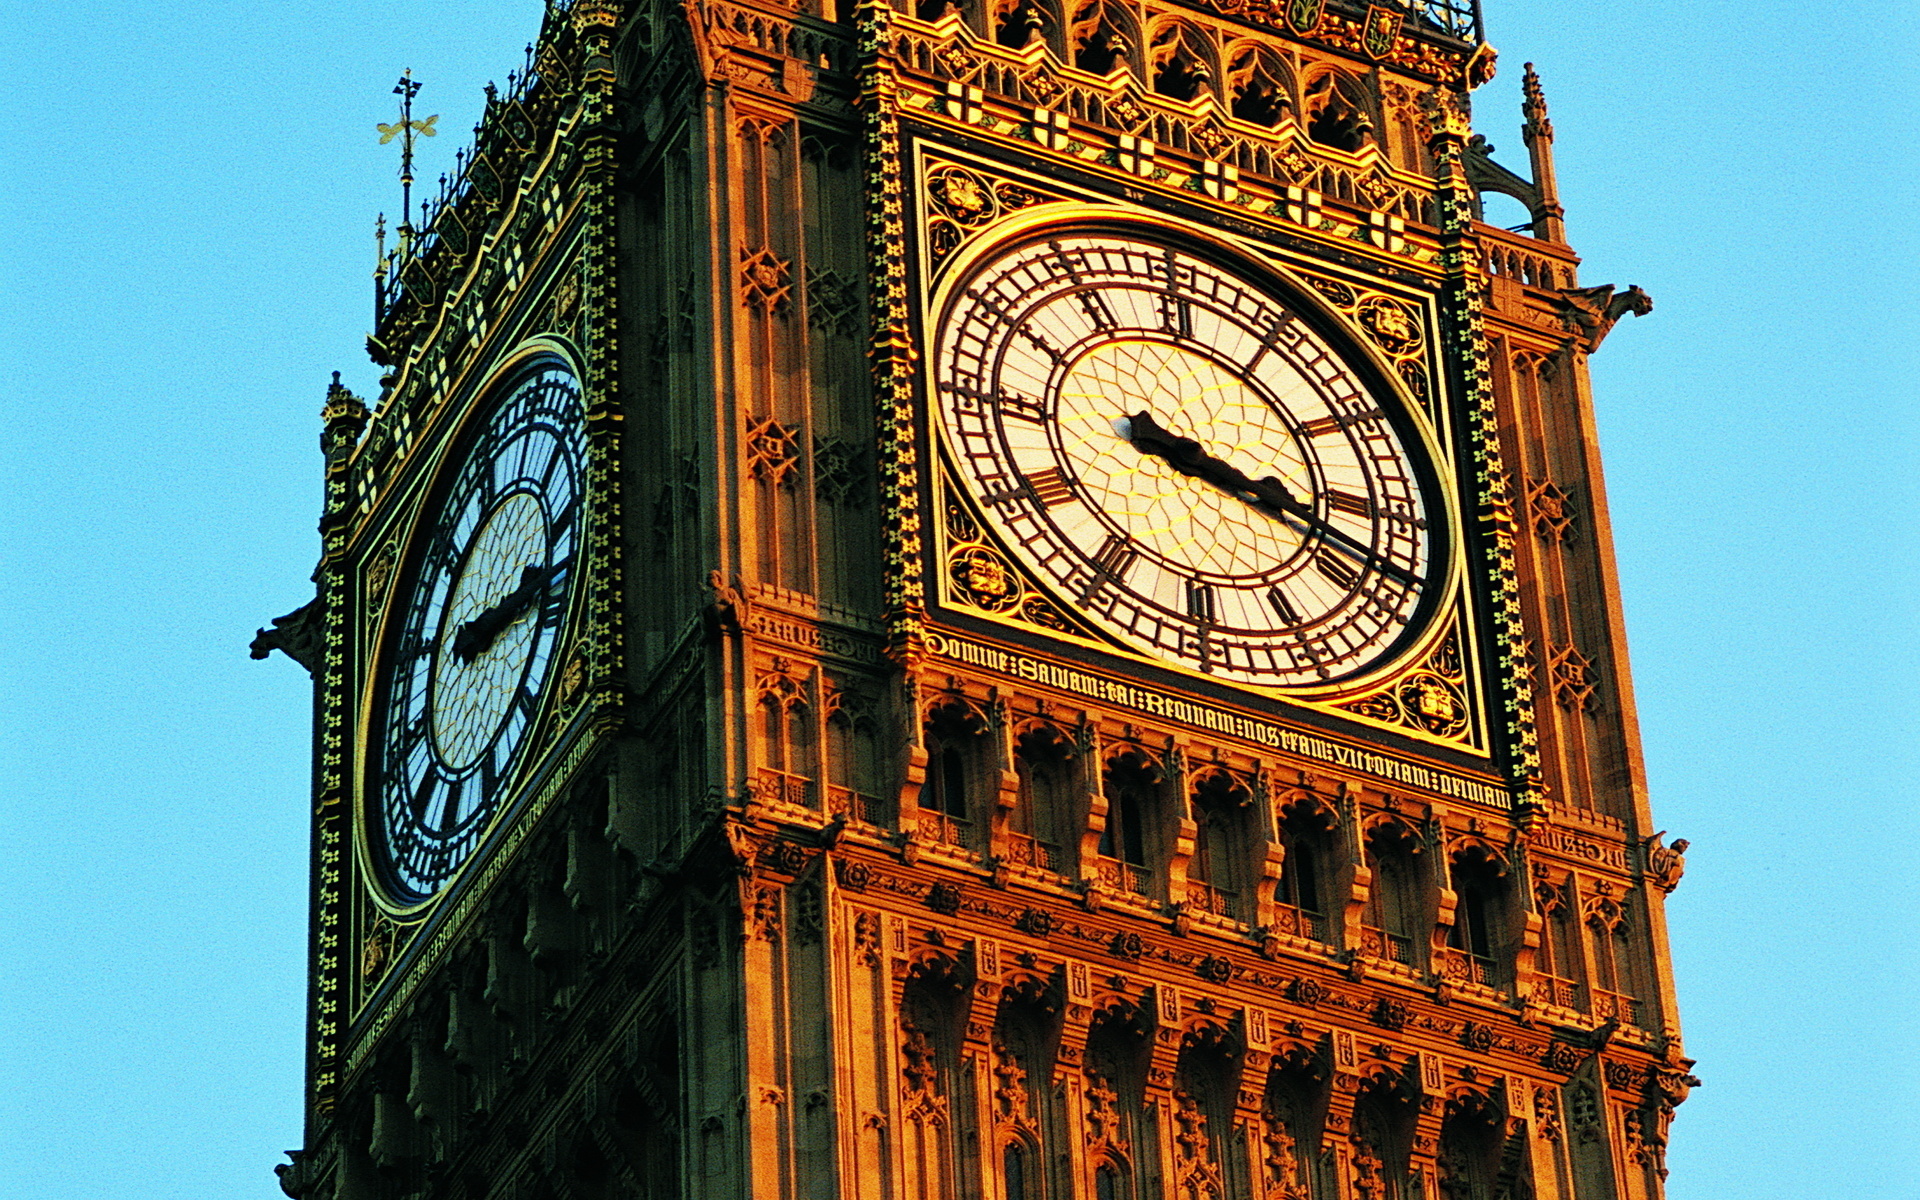 Время в лондоне и москве. Часовая башня Биг Бен. Биг-Бен (башня Елизаветы). Часы Биг Бен в Лондоне. Башня Святого Стефана Вестминстерского дворца.